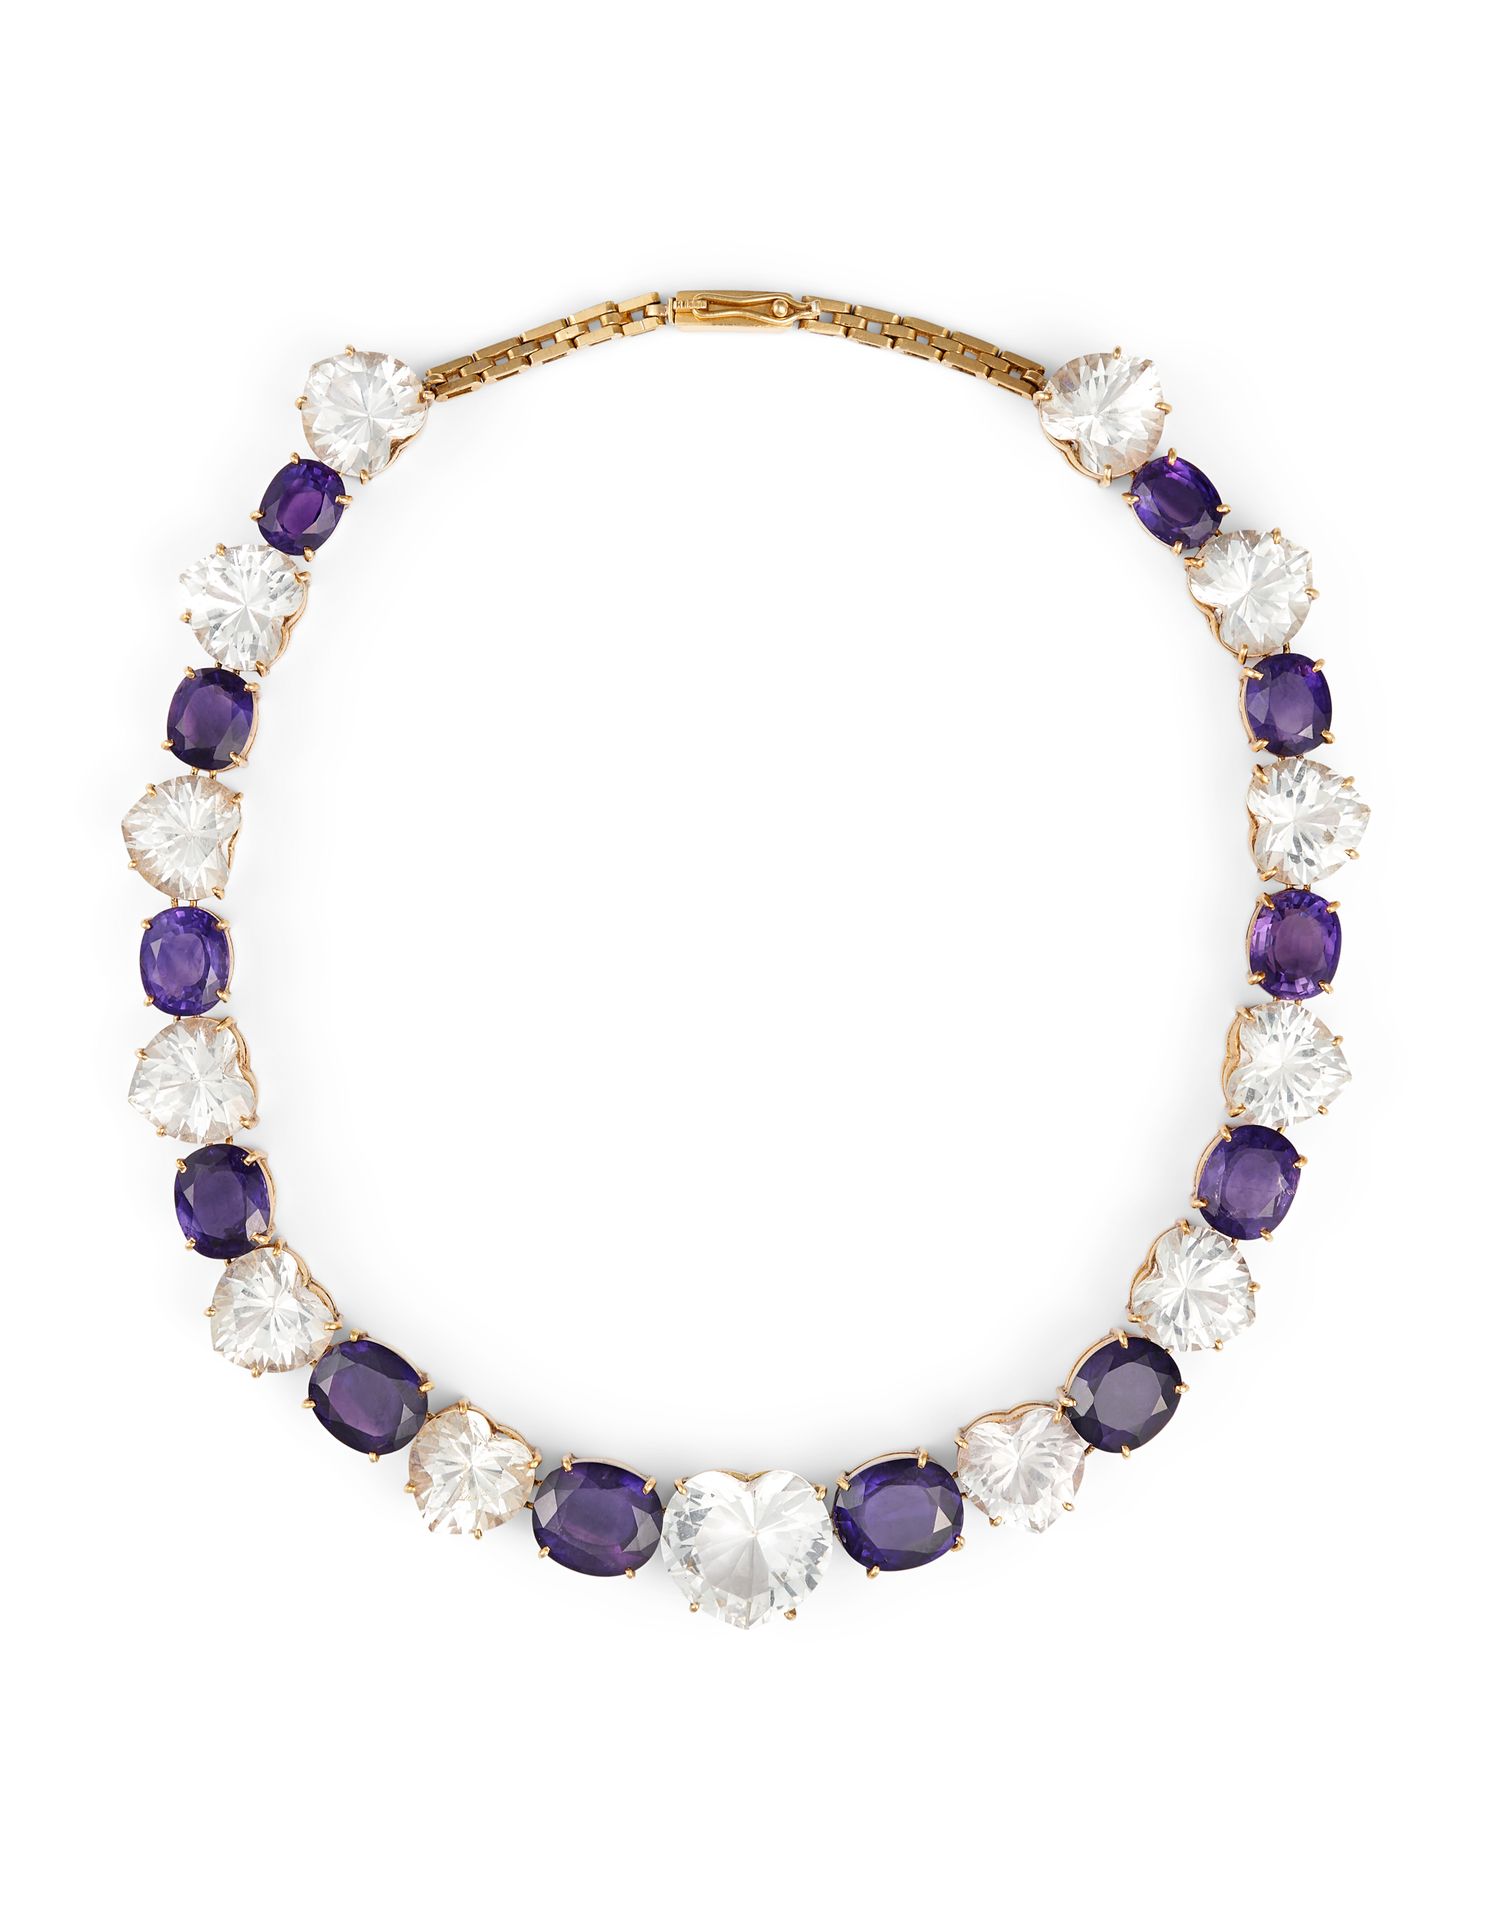 Null 黄宝石和紫水晶项链 18K黄金，镶有13颗心形白色黄宝石和12颗递减的椭圆形紫水晶。

印章。750

尺寸：38厘米 - Tw:76 g